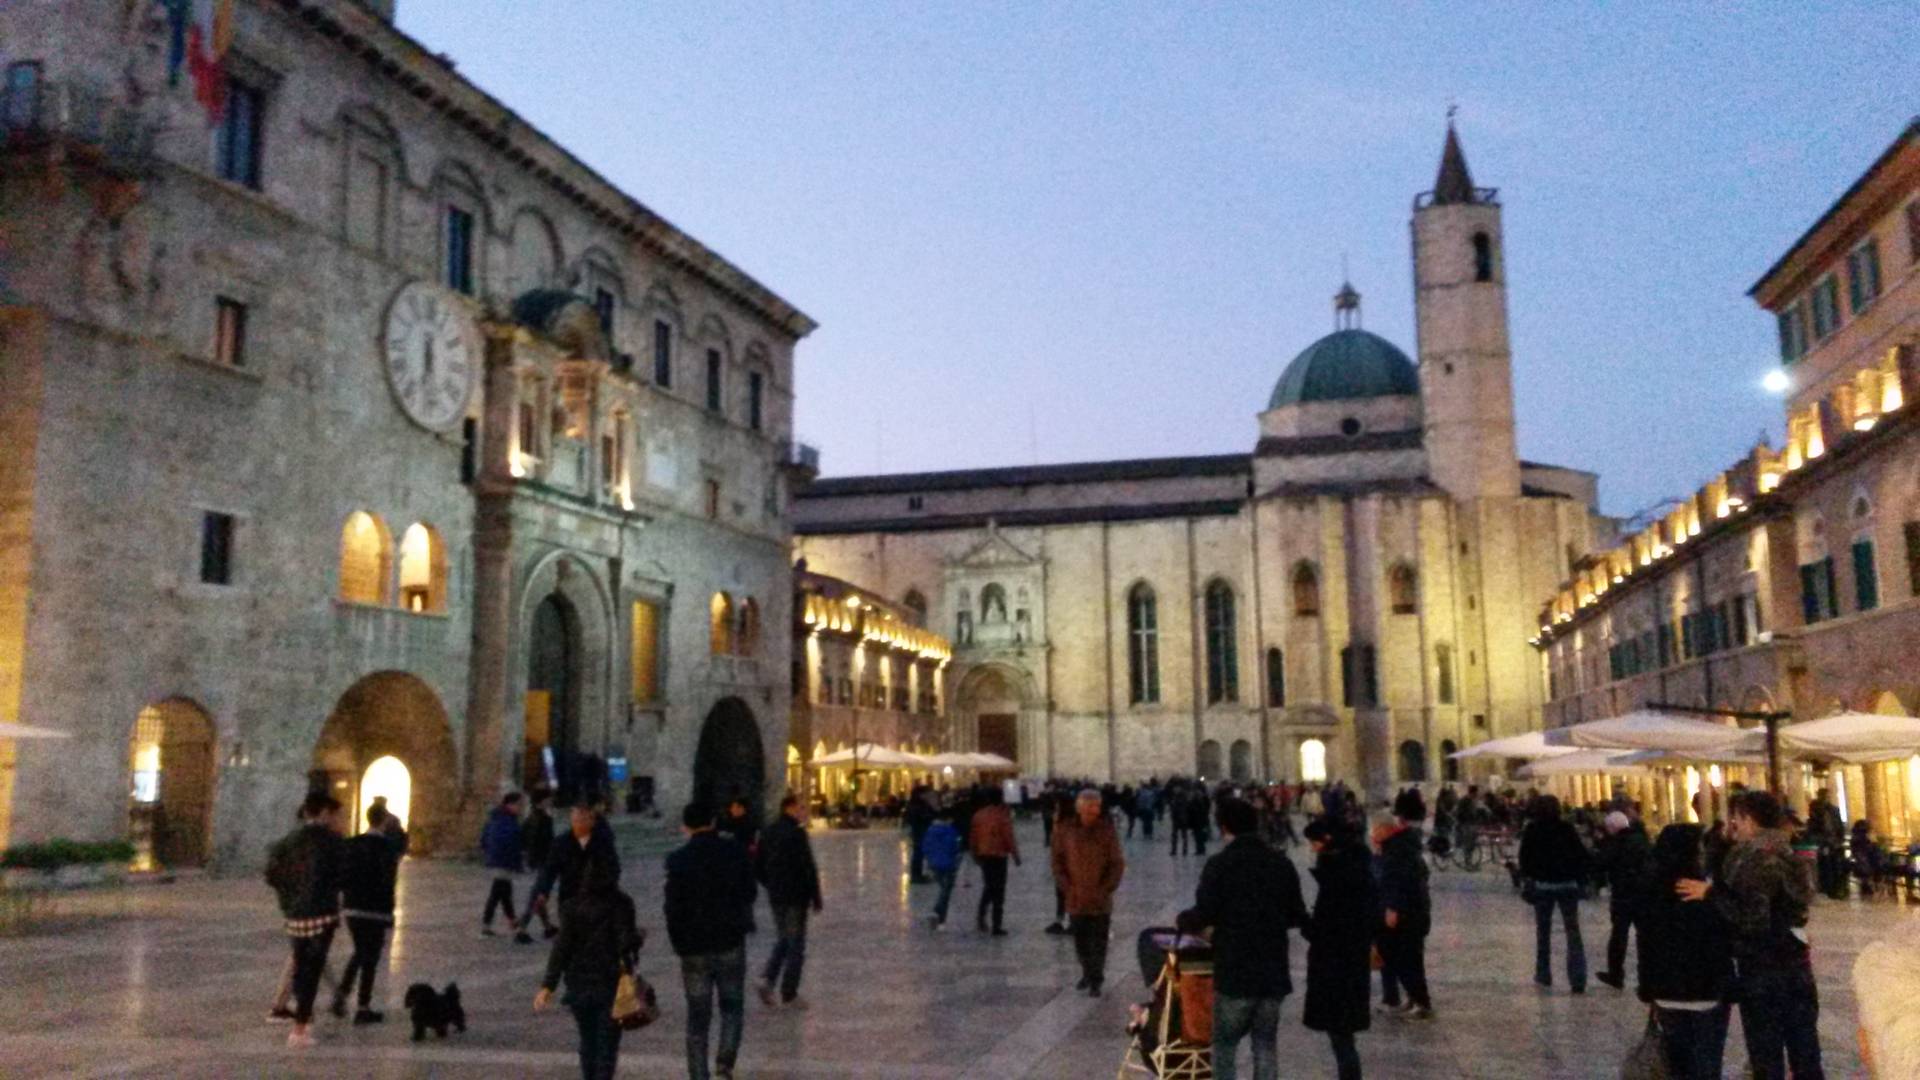 Attivit? commerciale Ascoli Piceno centro storico